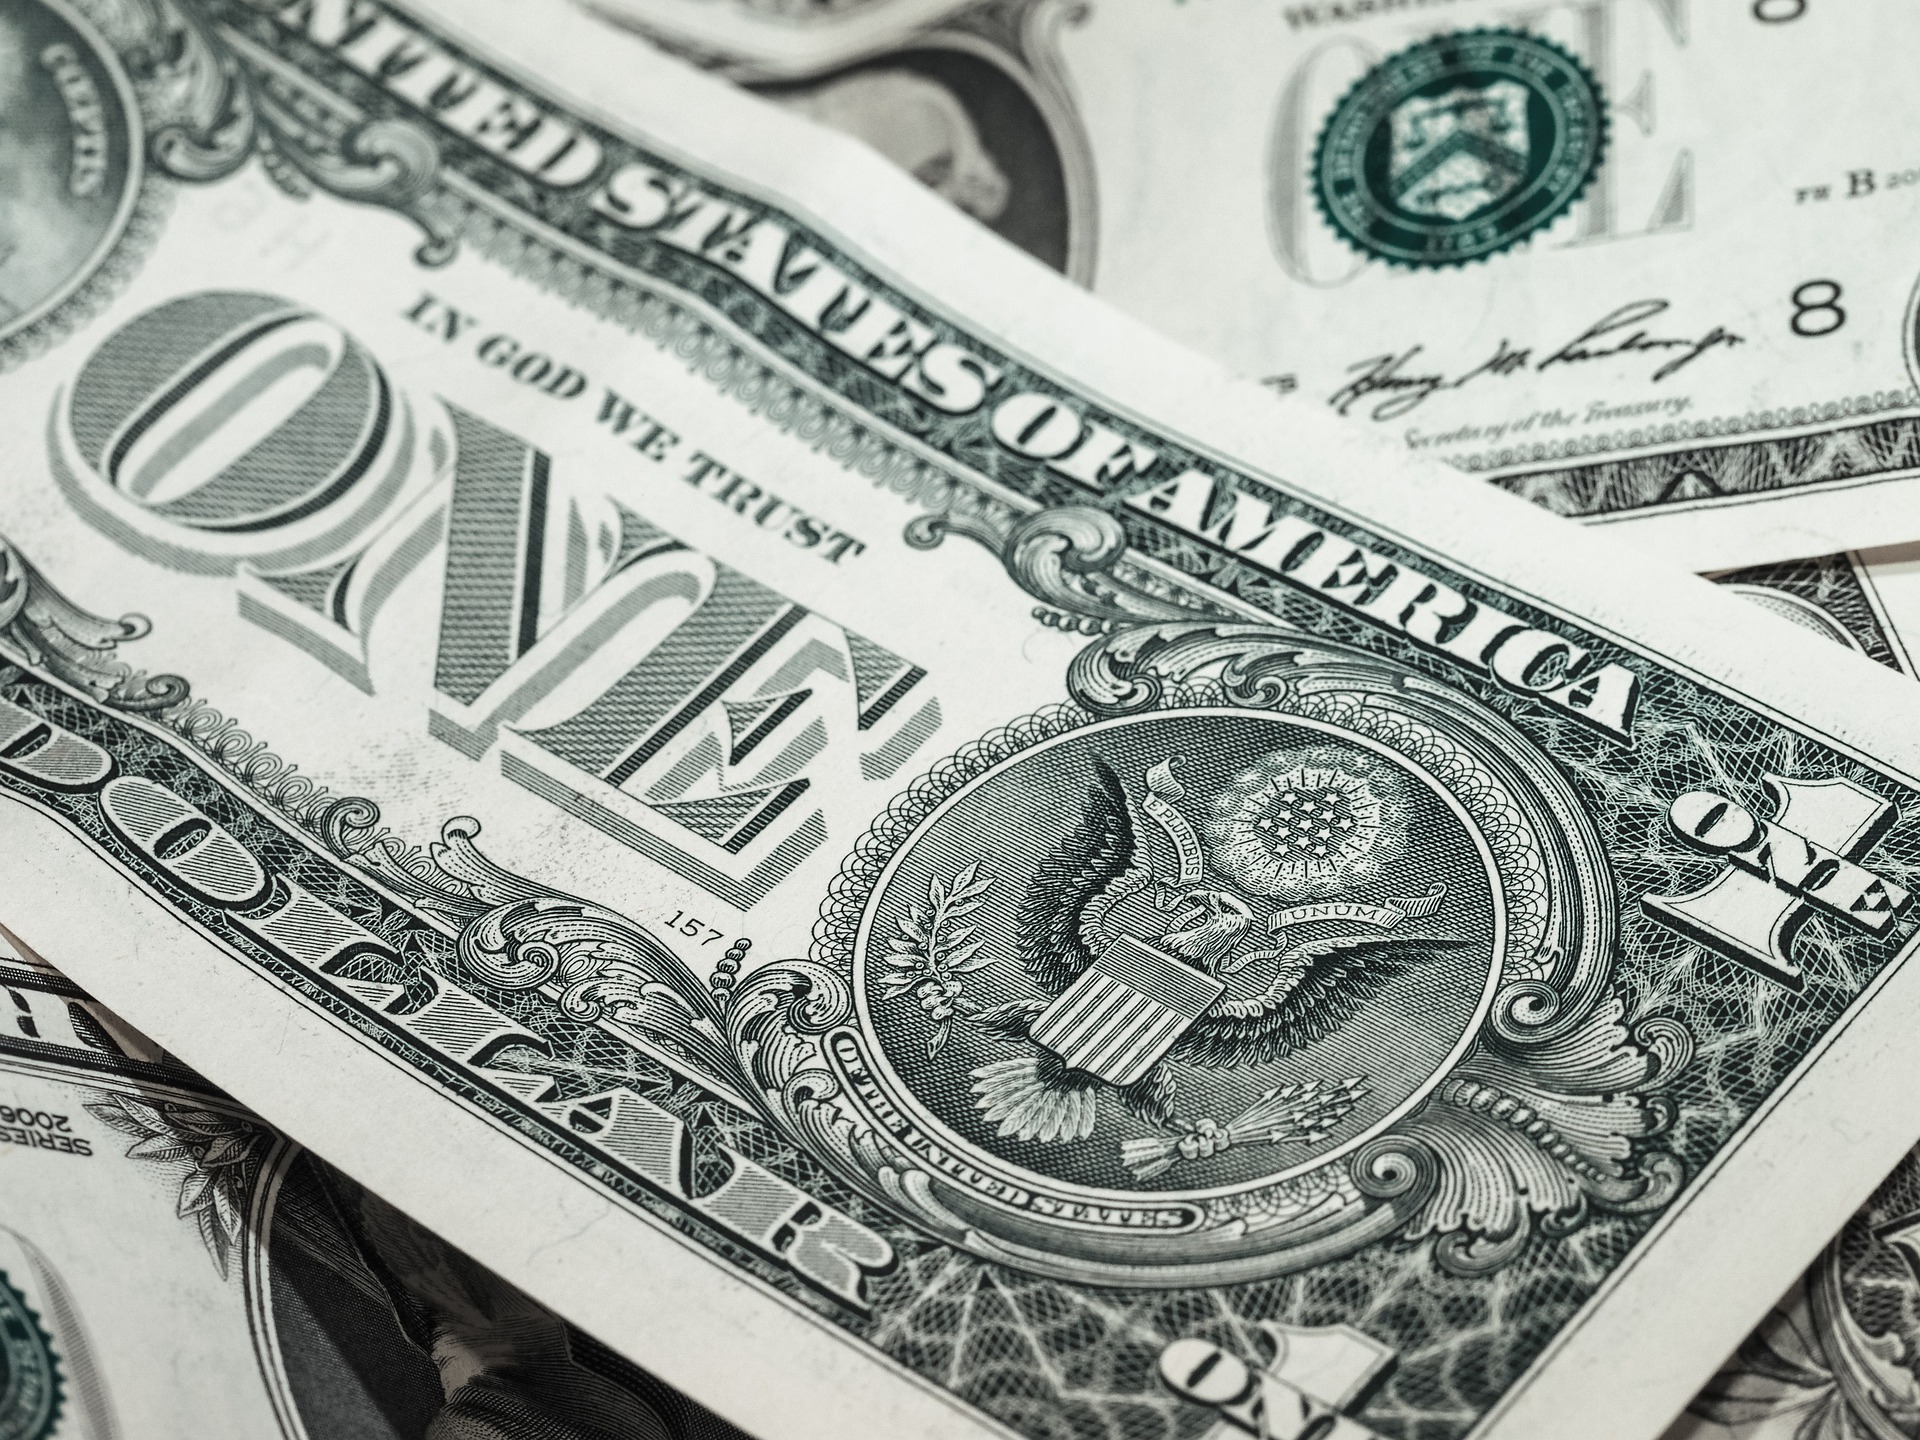 Dolar, serbest piyasada yılın rekor seviyesine ulaştı